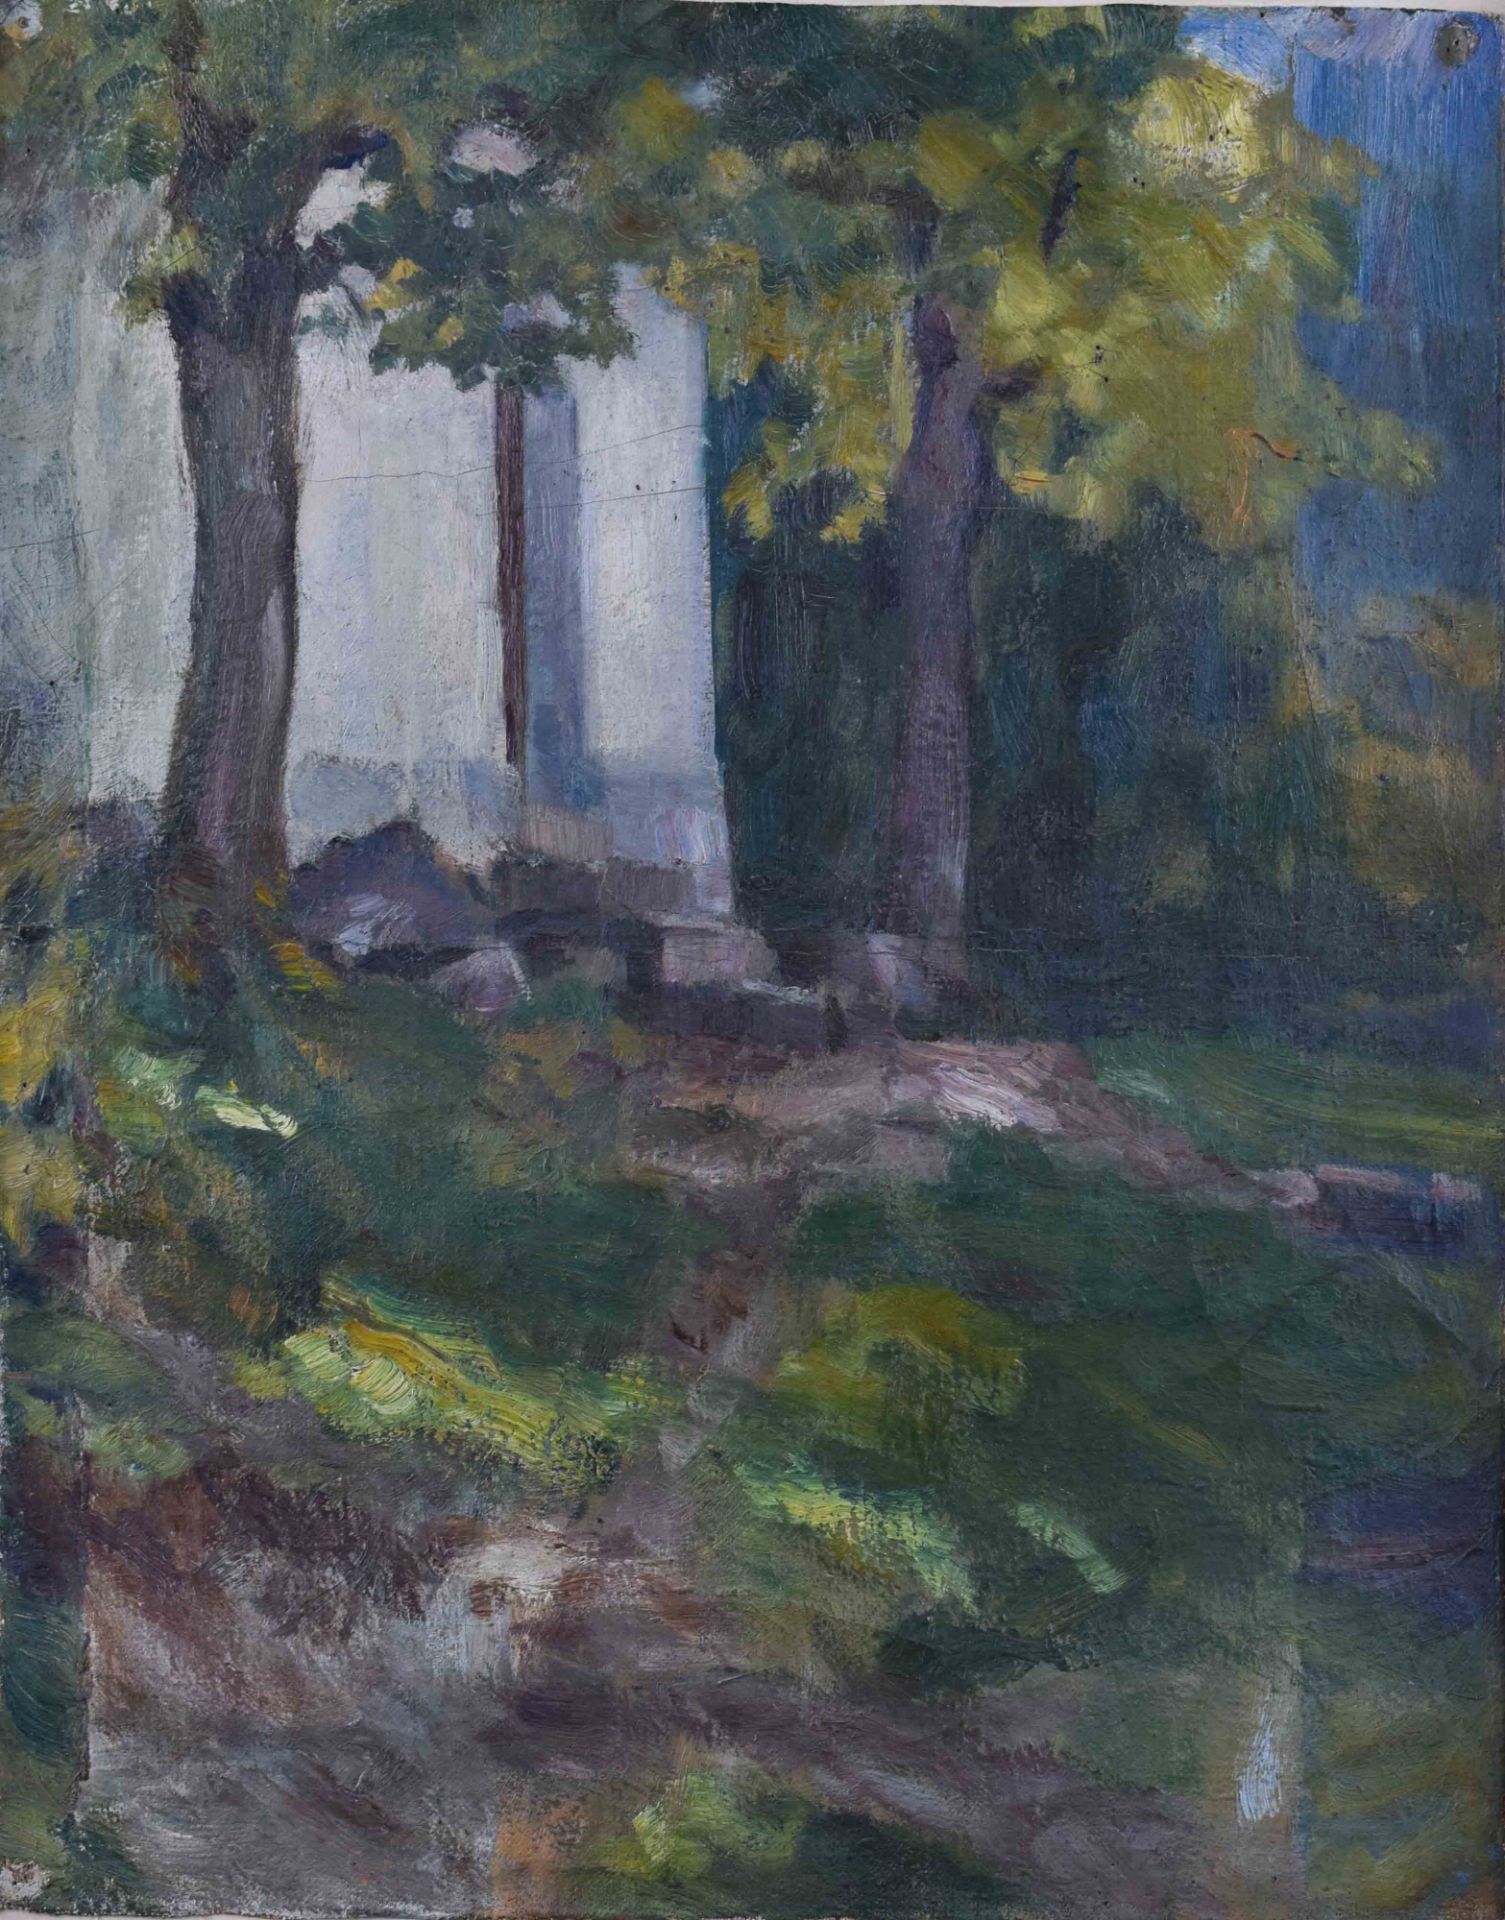 Curt RÜGER (1867-1930)"Park landscape"oil on canvas, dimensions: 46 cm x 36 cmCurt RÜGER (1867-